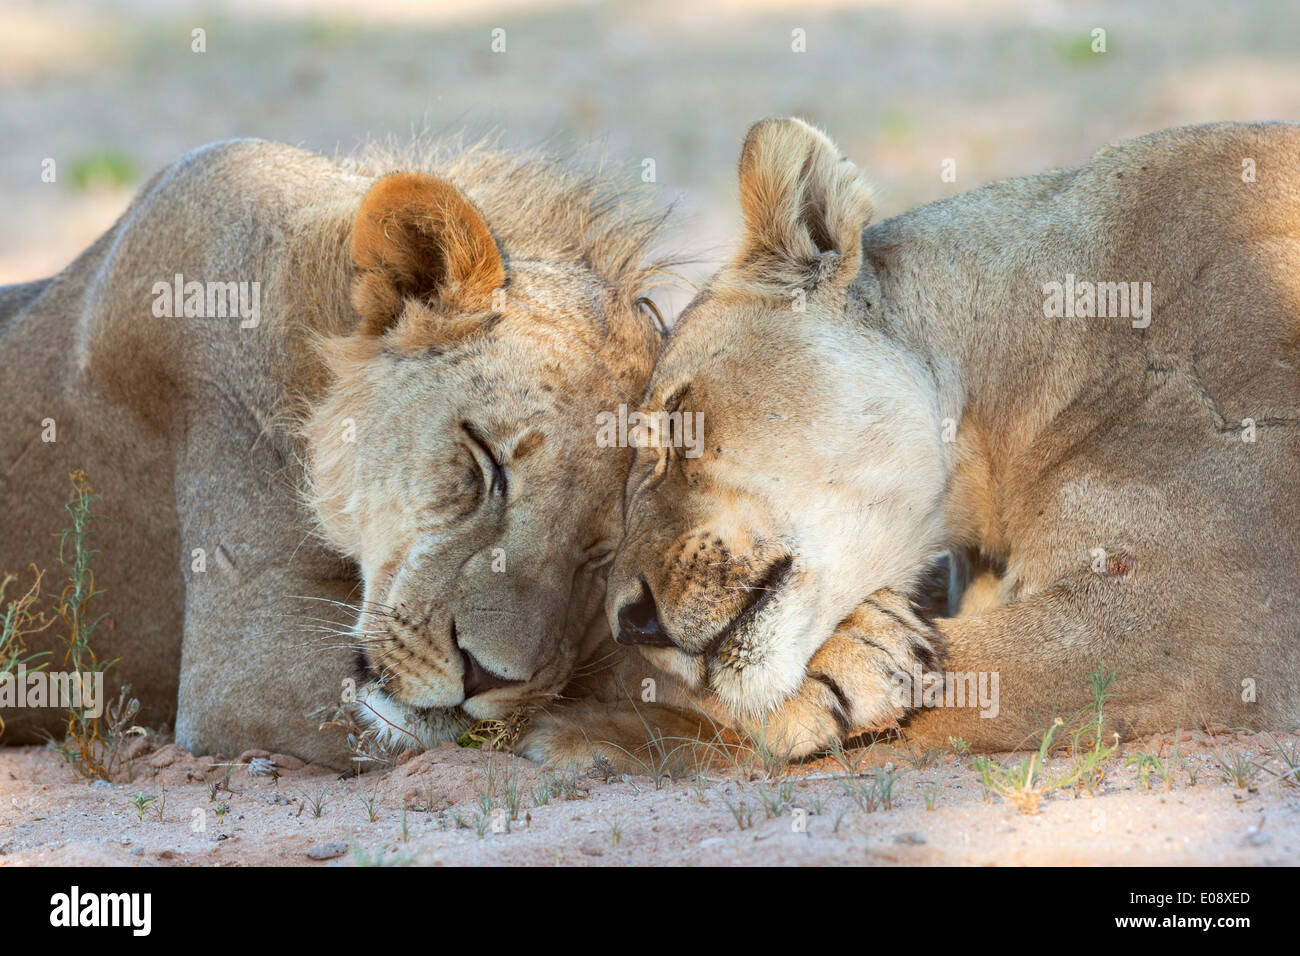 Lion (Panthera leo), les membres de la fierté, de repos Kgalagadi Transfrontier Park, Northern Cape, Afrique du Sud, février 2014 Banque D'Images